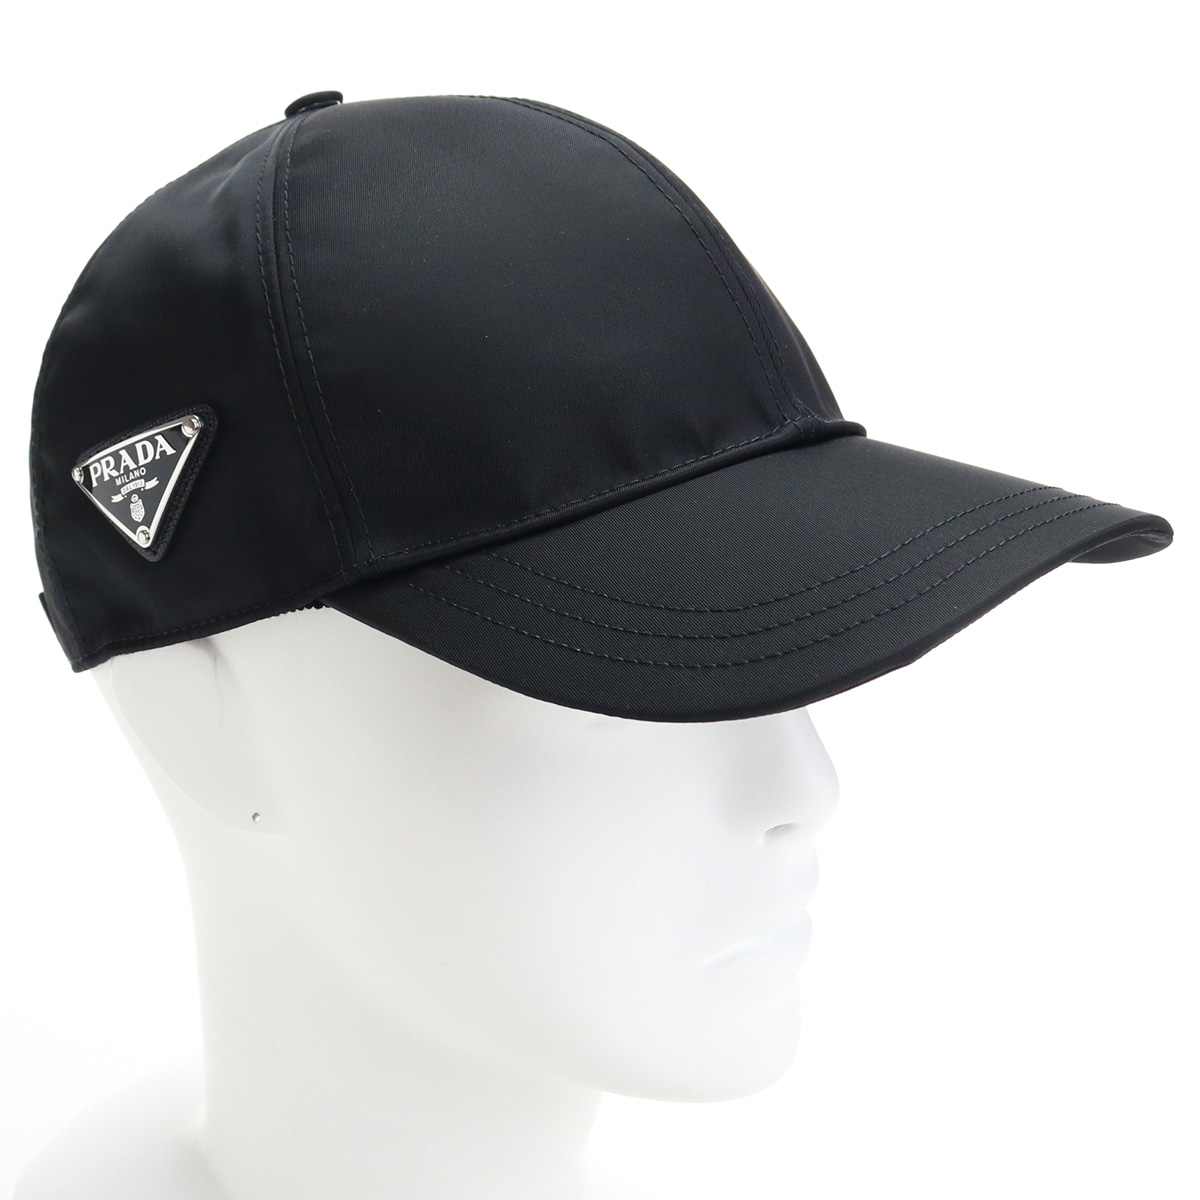 プラダ PRADA ユニセックス−帽子類 ブランドロゴ ブランドキャップ ブラック F0002 1HC274 2DMI cap-01 帽子